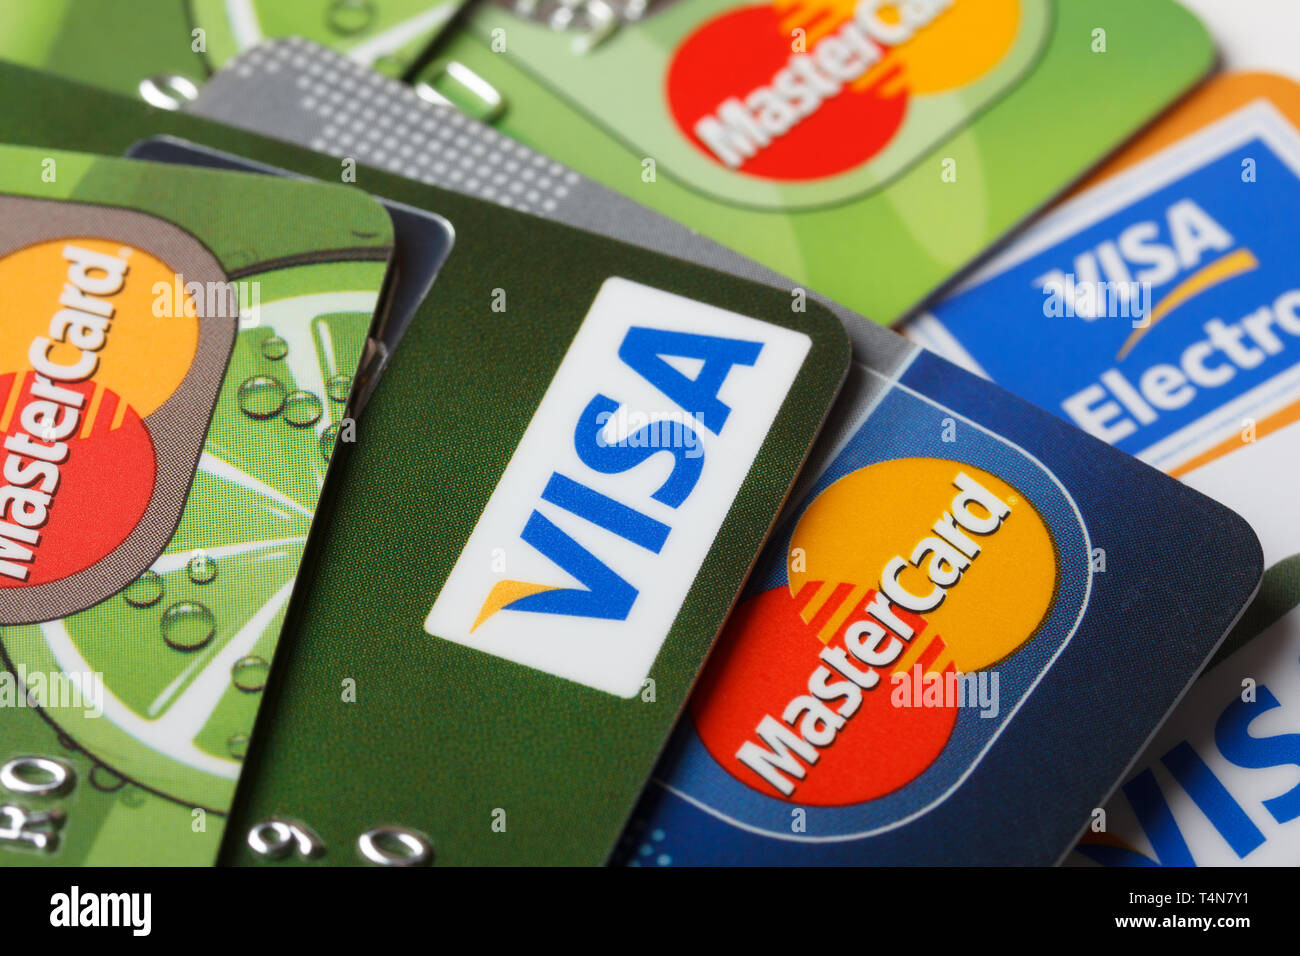 KIEV, UKRAINE - 11 Mars : Pile de cartes de crédit, Visa et MasterCard, crédit, débit et électronique, à Kiev, Ukraine, le 11 mars 2014. Focu sélective Banque D'Images